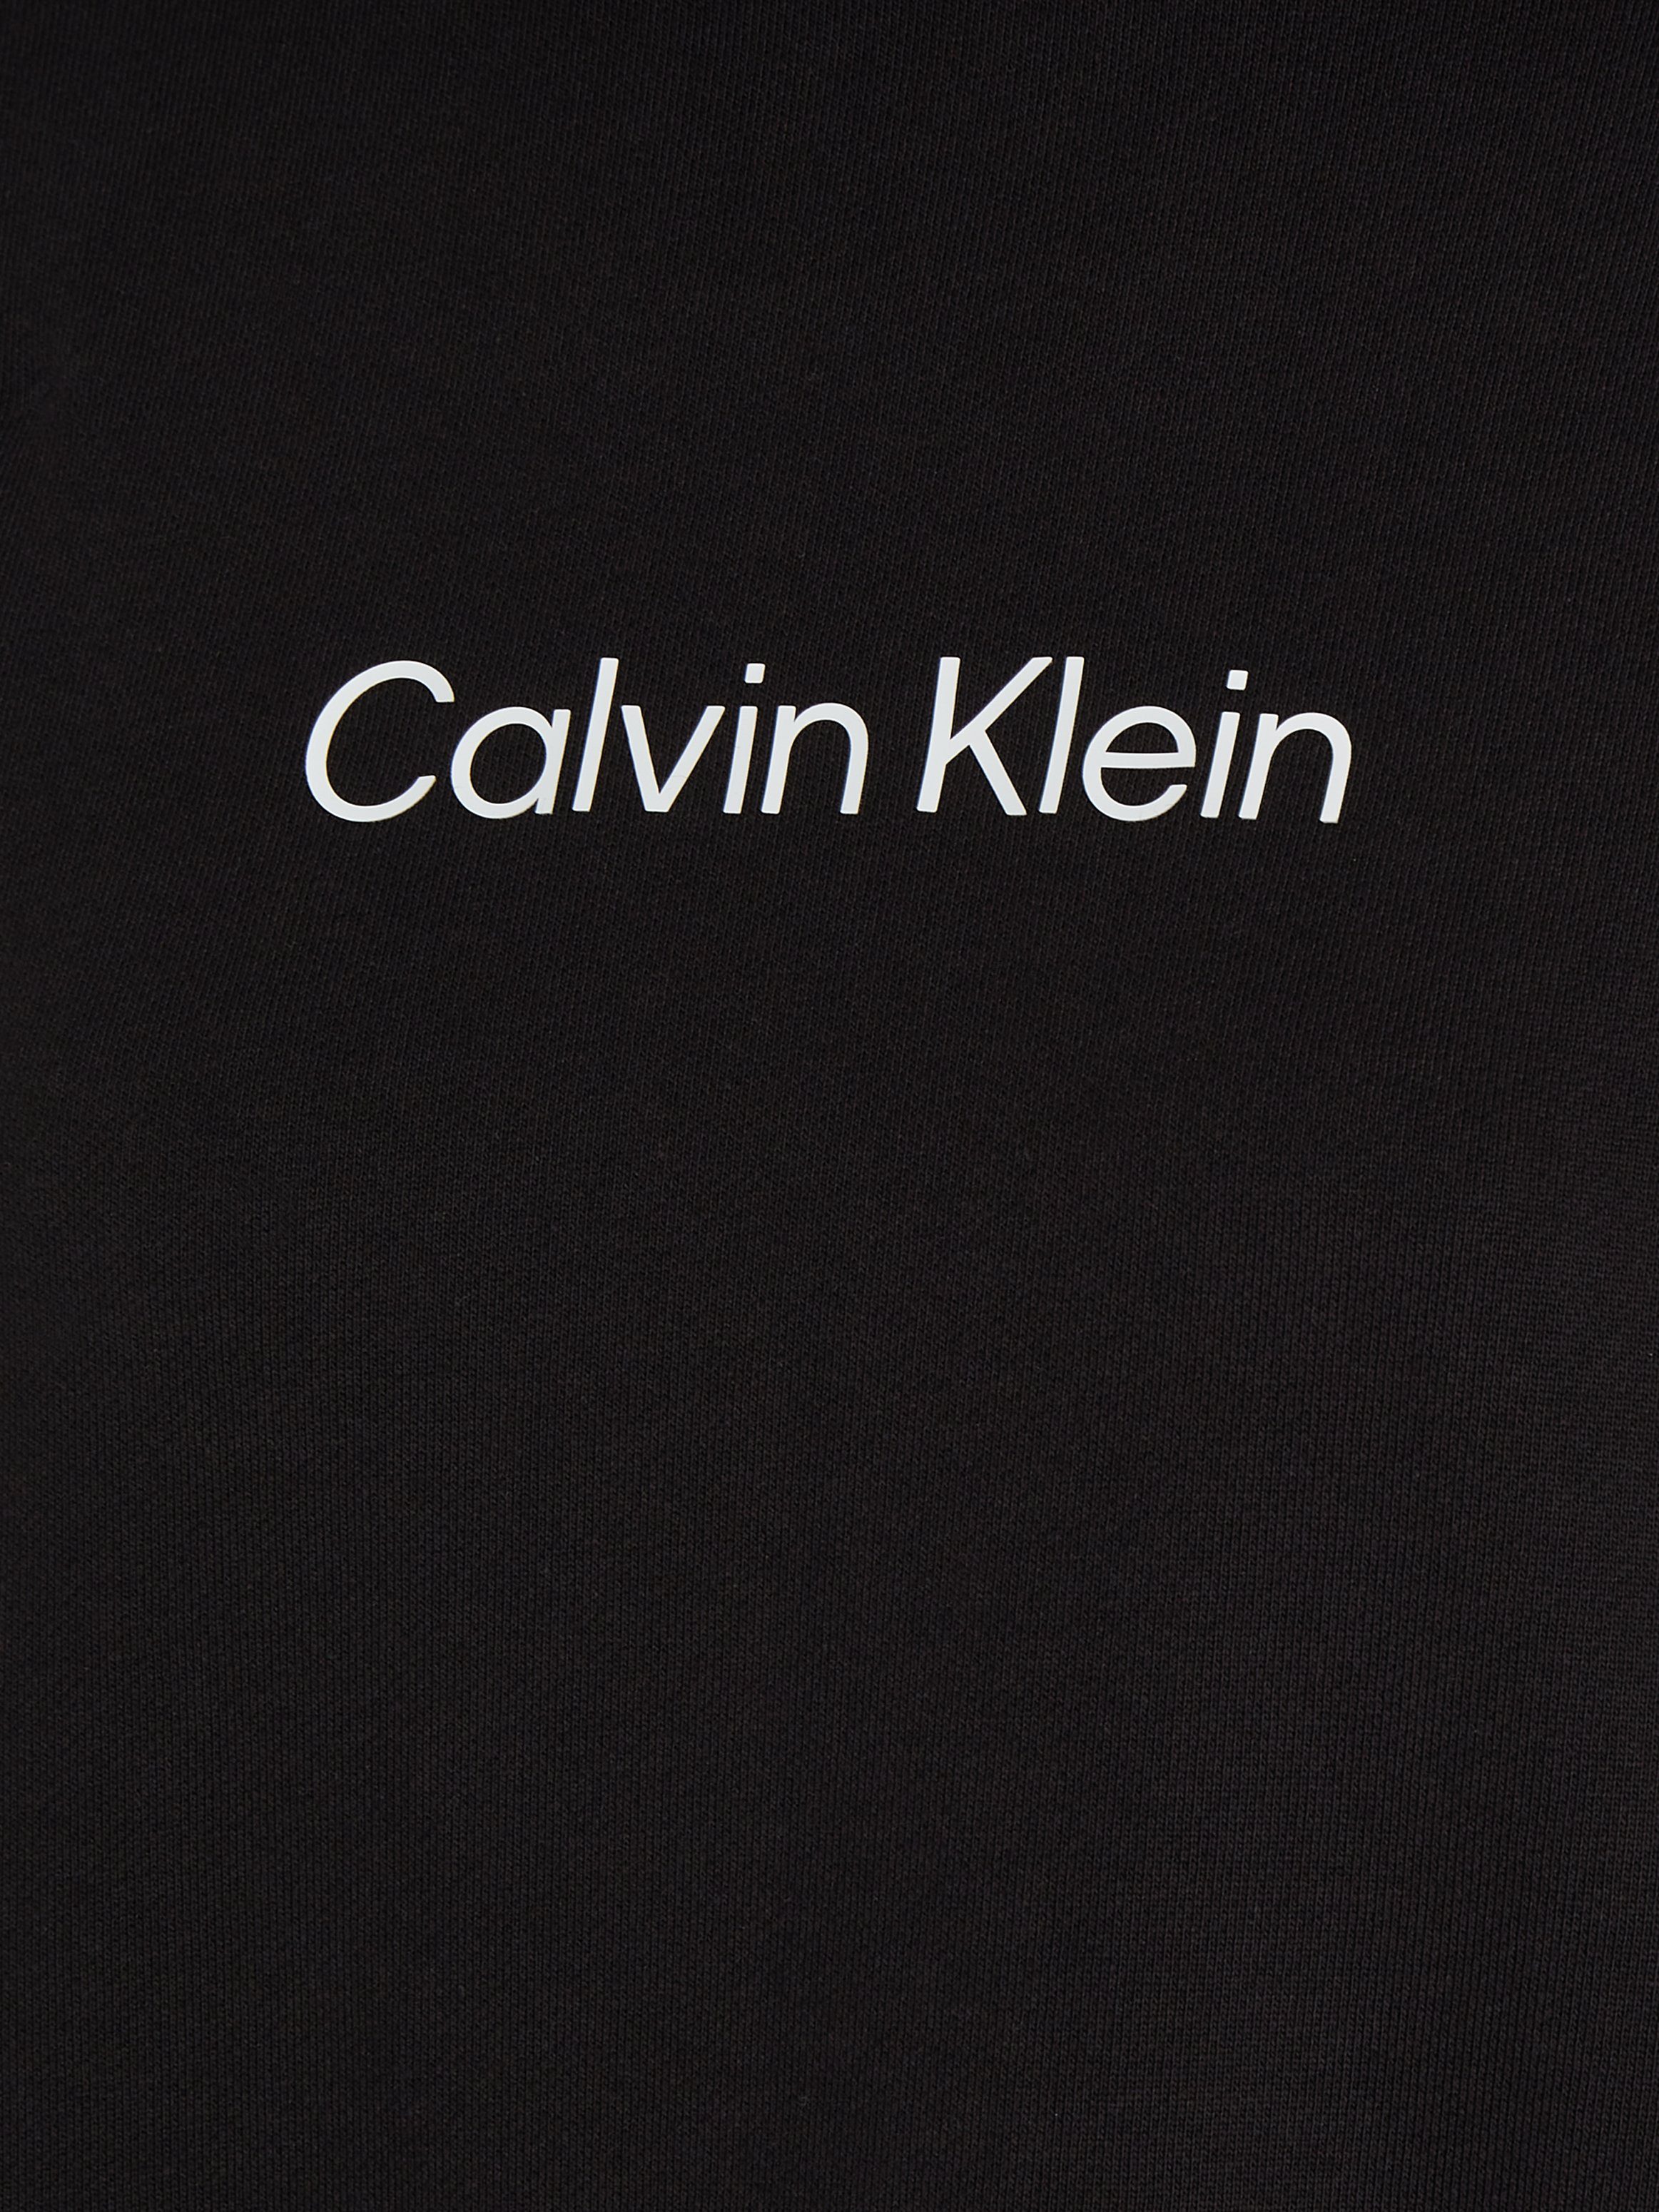 HOODIE Sweatkleid Klein HERO Calvin DRESS LOGO